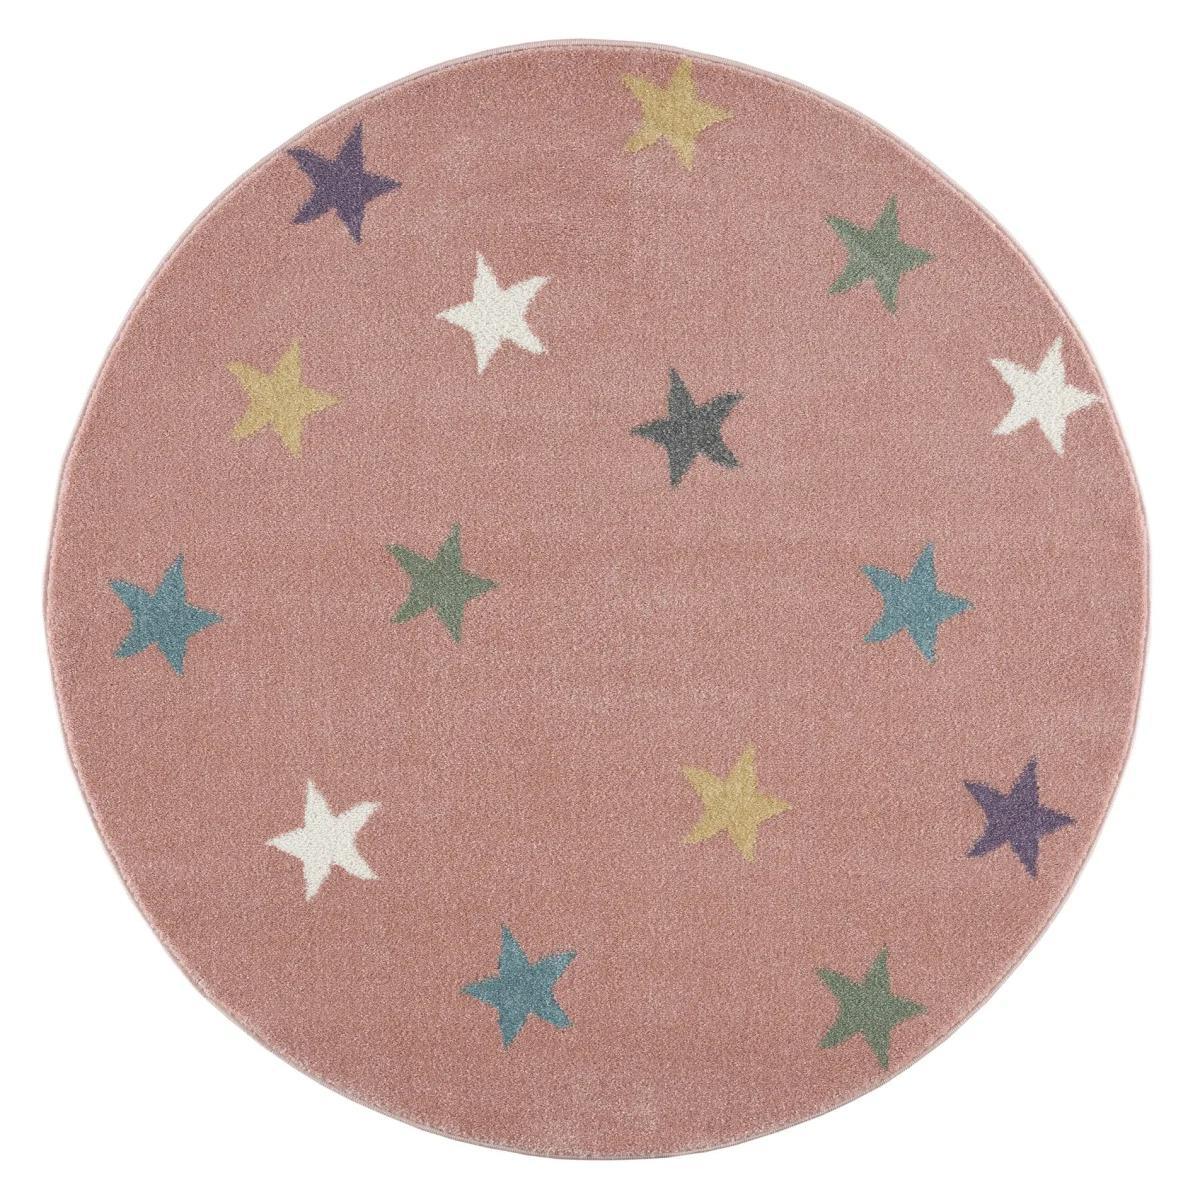 Dywan dziecięcy okrągły Pink Stars Round 160 cm do pokoju dziecięcego różowy w gwiazdki nr. 2